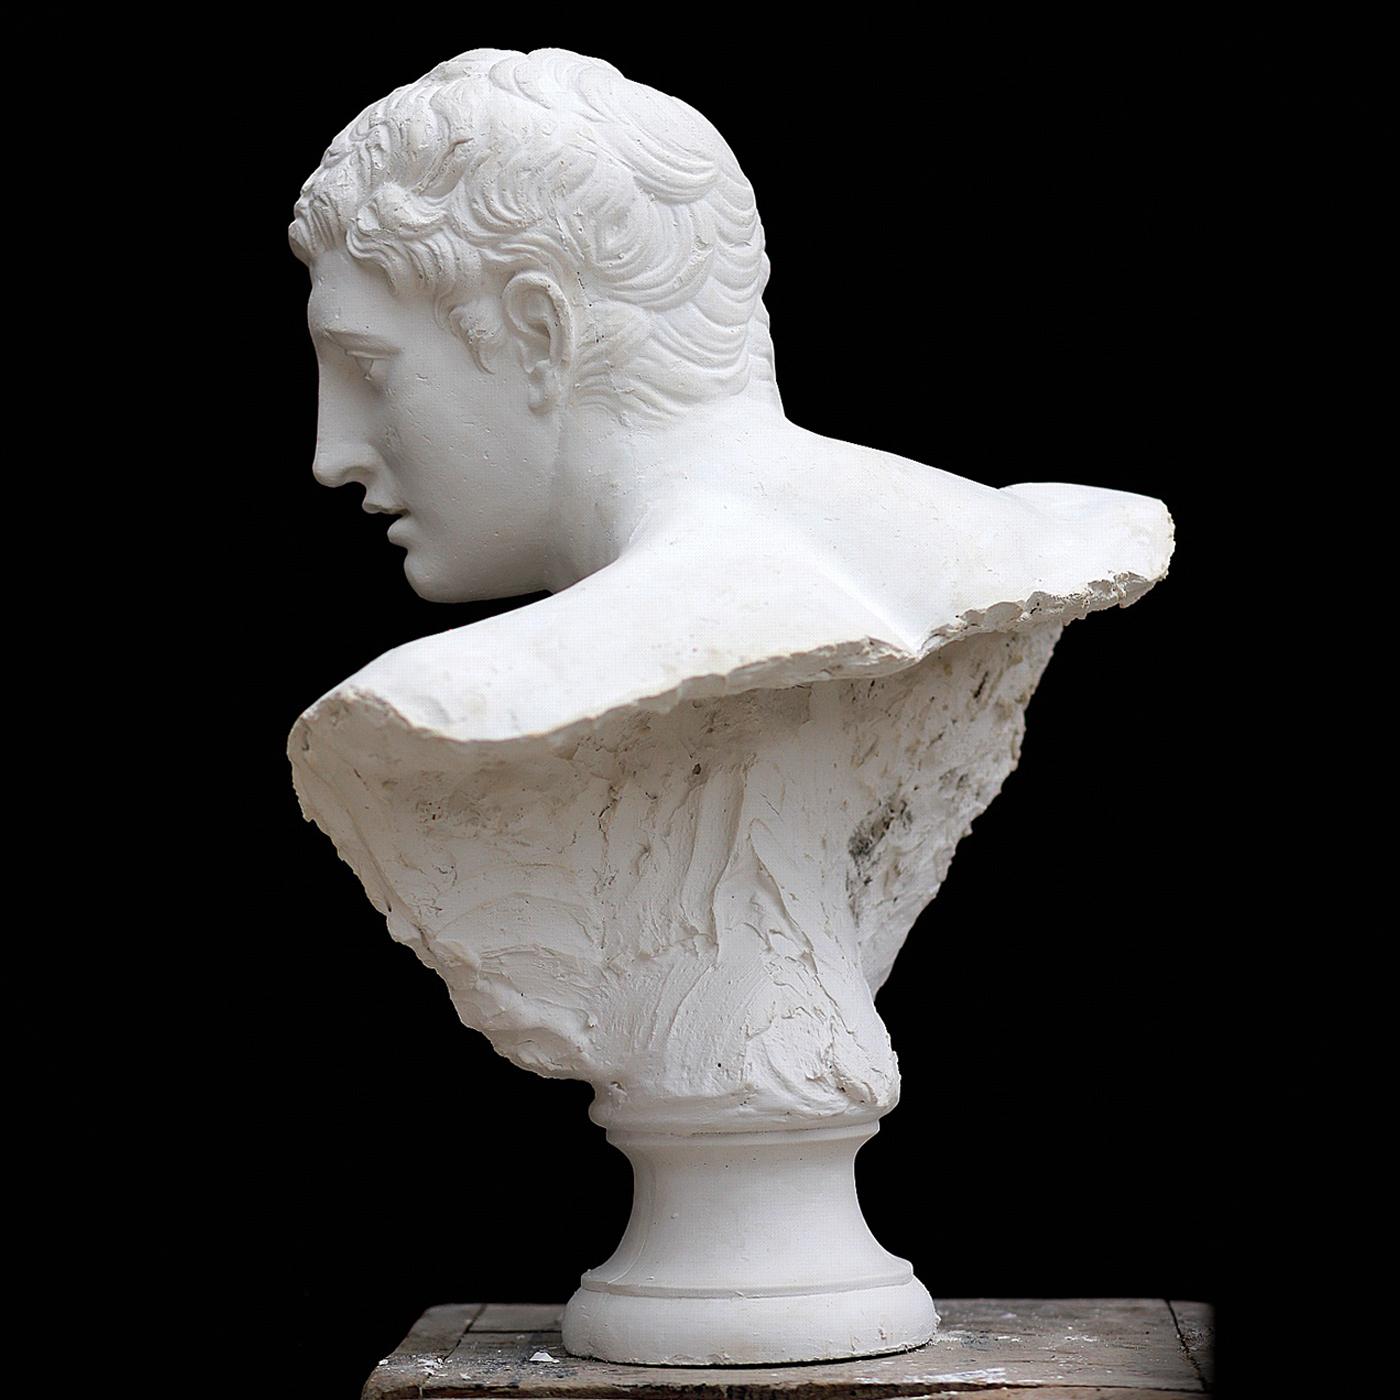 Este exquisito busto es una representación exacta del rostro del Discóbolo, la famosa escultura griega cuyas célebres copias romanas se encuentran en el Museo Nacional Británico y en el Museo Nazionale Romano. Esculpido a mano por los artistas del